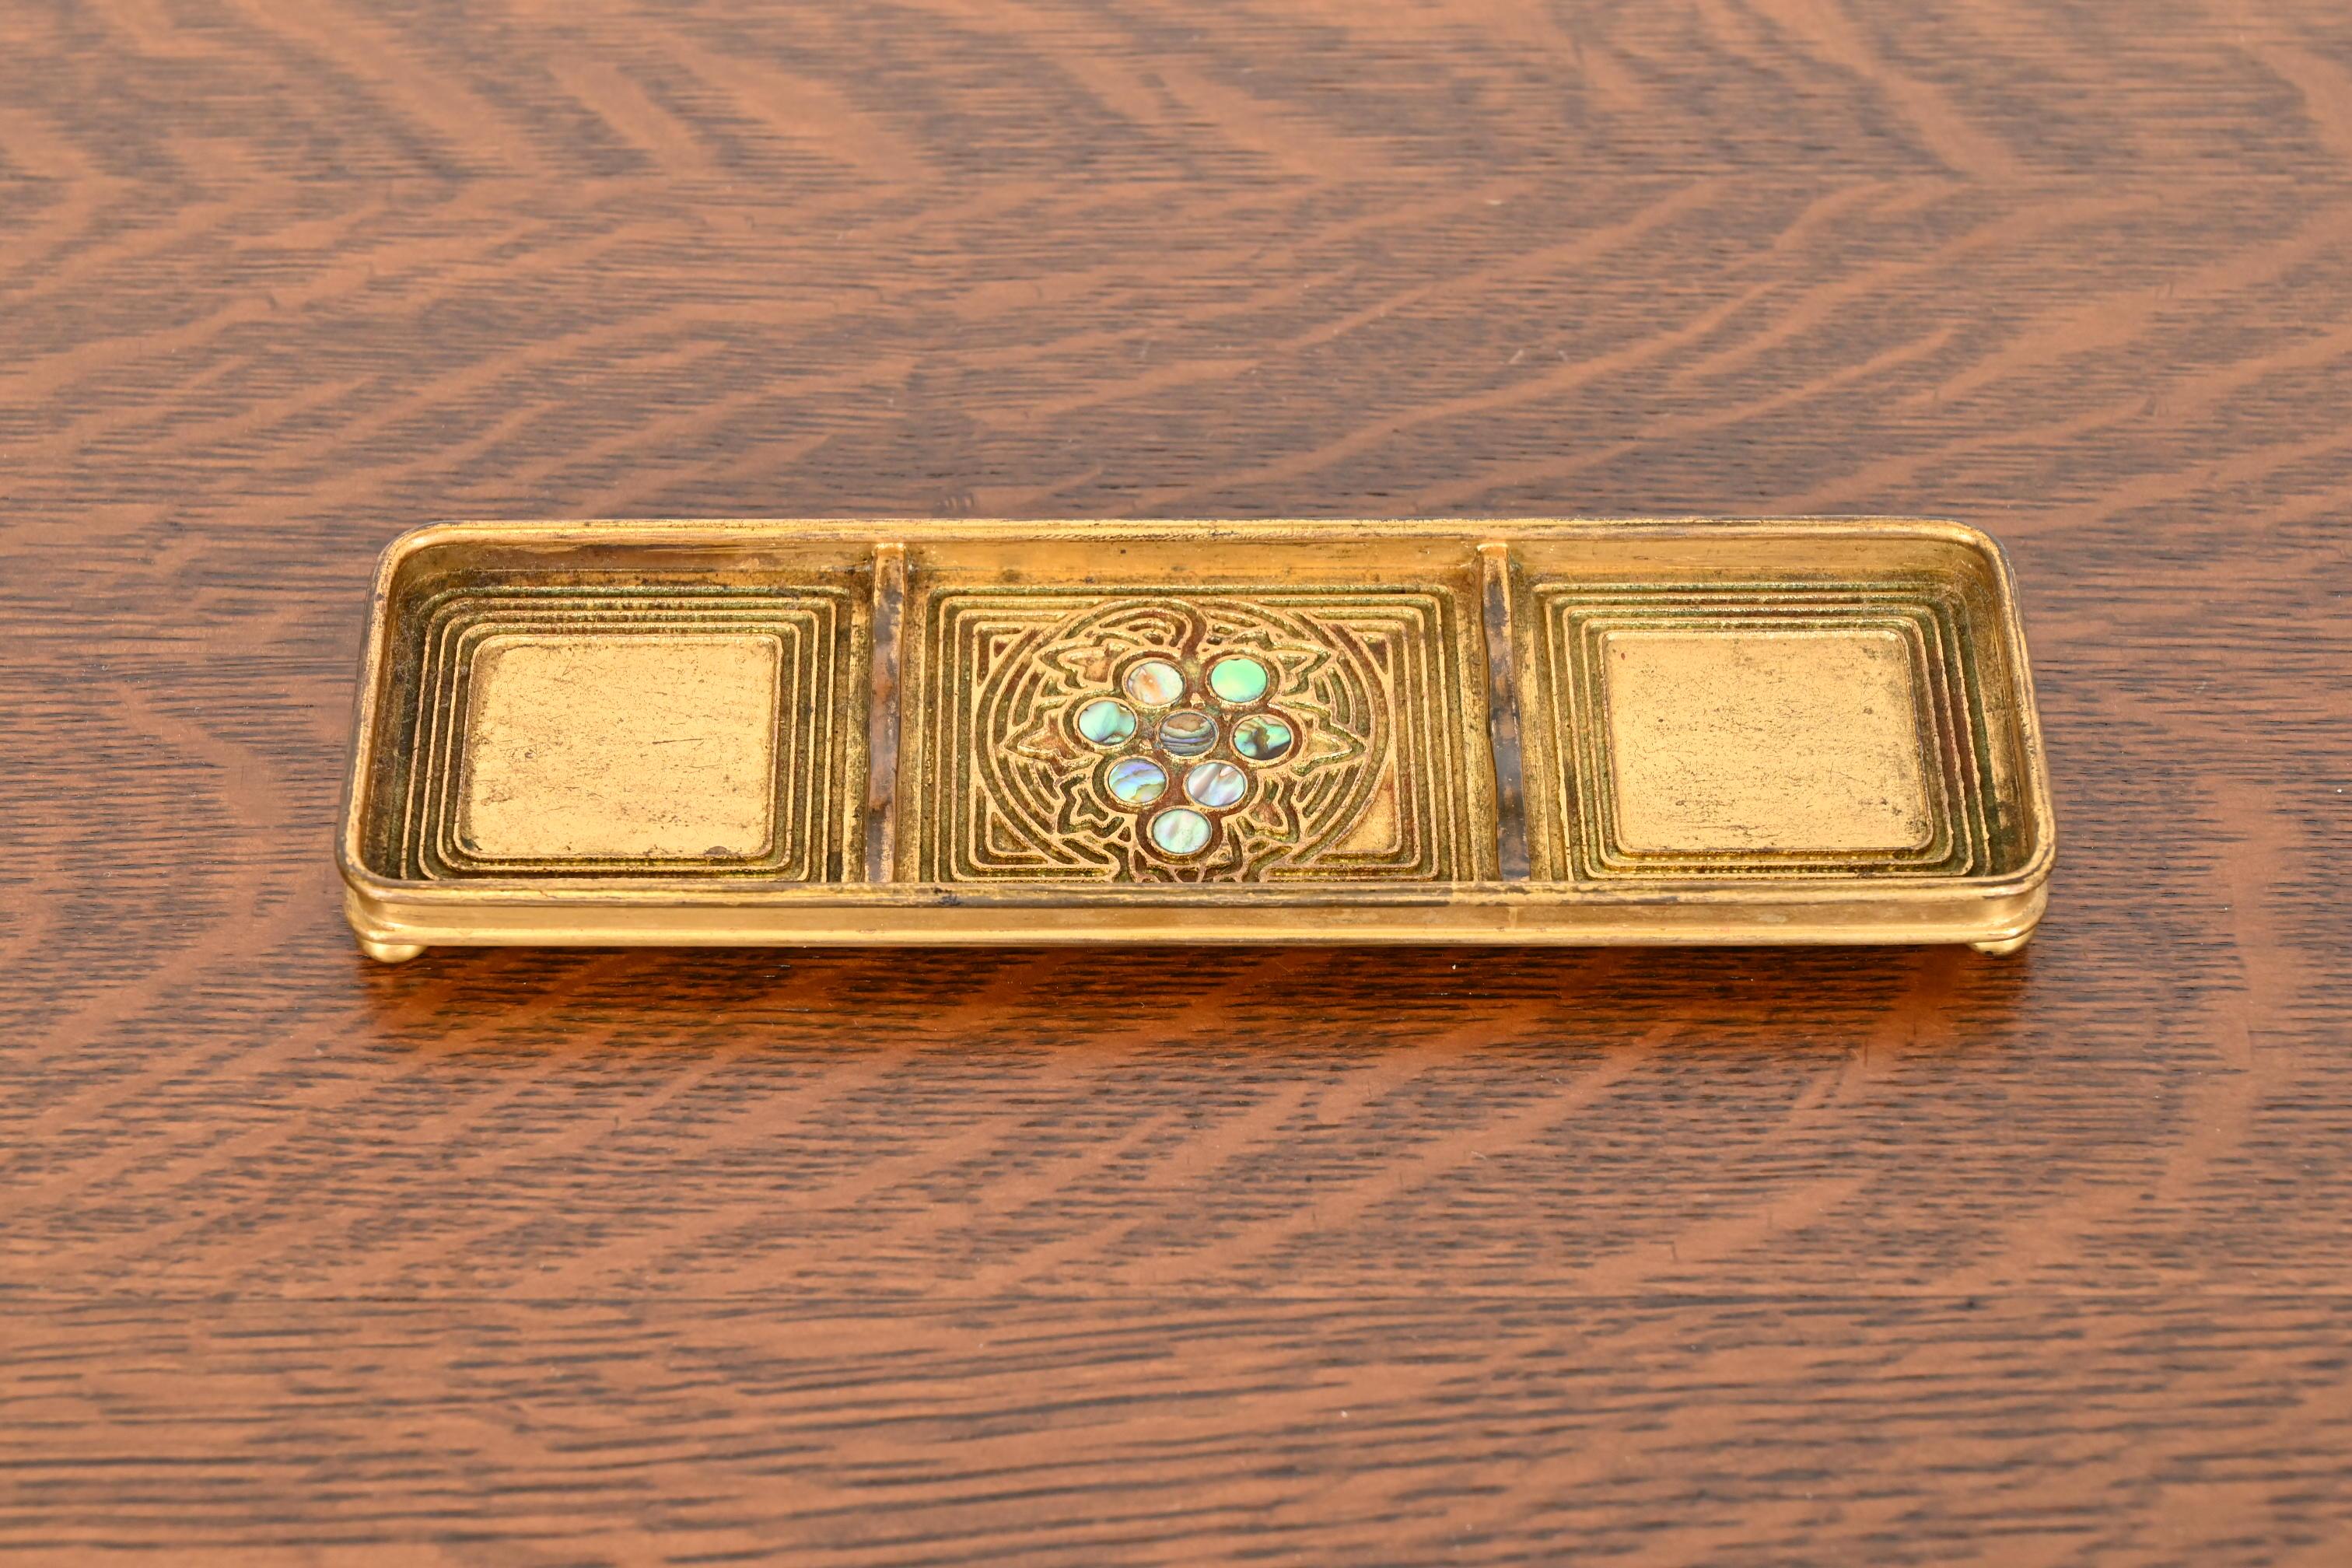 Ein wunderschönes Tablett aus vergoldeter Bronze und eingelegtem Abalone-Stift

Von Tiffany Studios (signiert auf der Unterseite)

New York, USA, Anfang des 20. Jahrhunderts

Maße: 8,75 